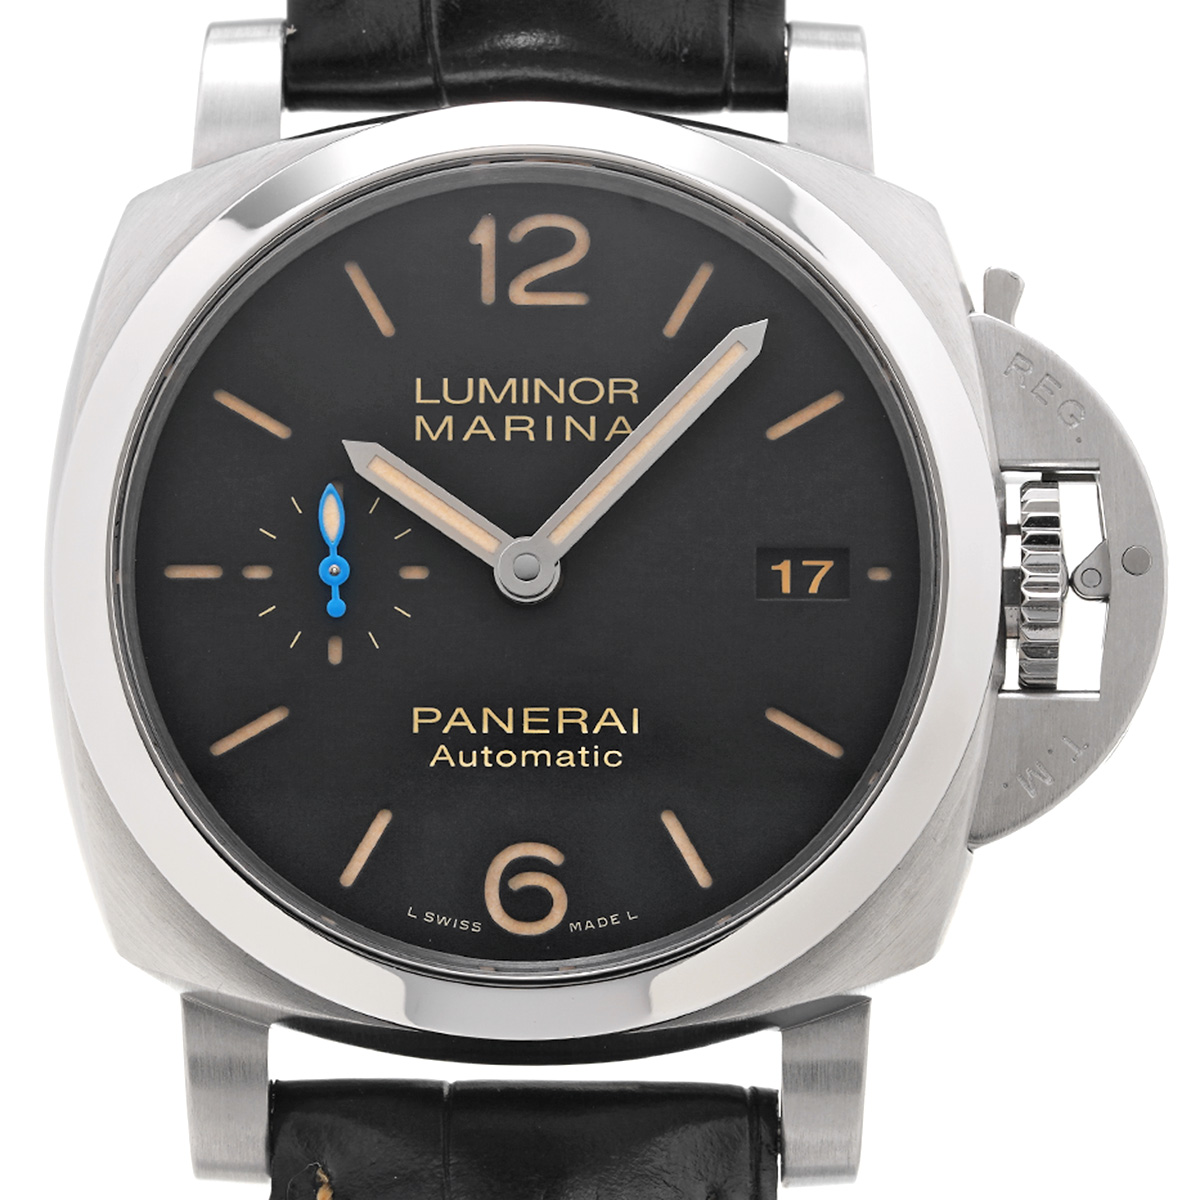 パネライ PANERAI ルミノールマリーナ 1950 3デイズ オートマチック アッチャイオ 腕時計 メンズ